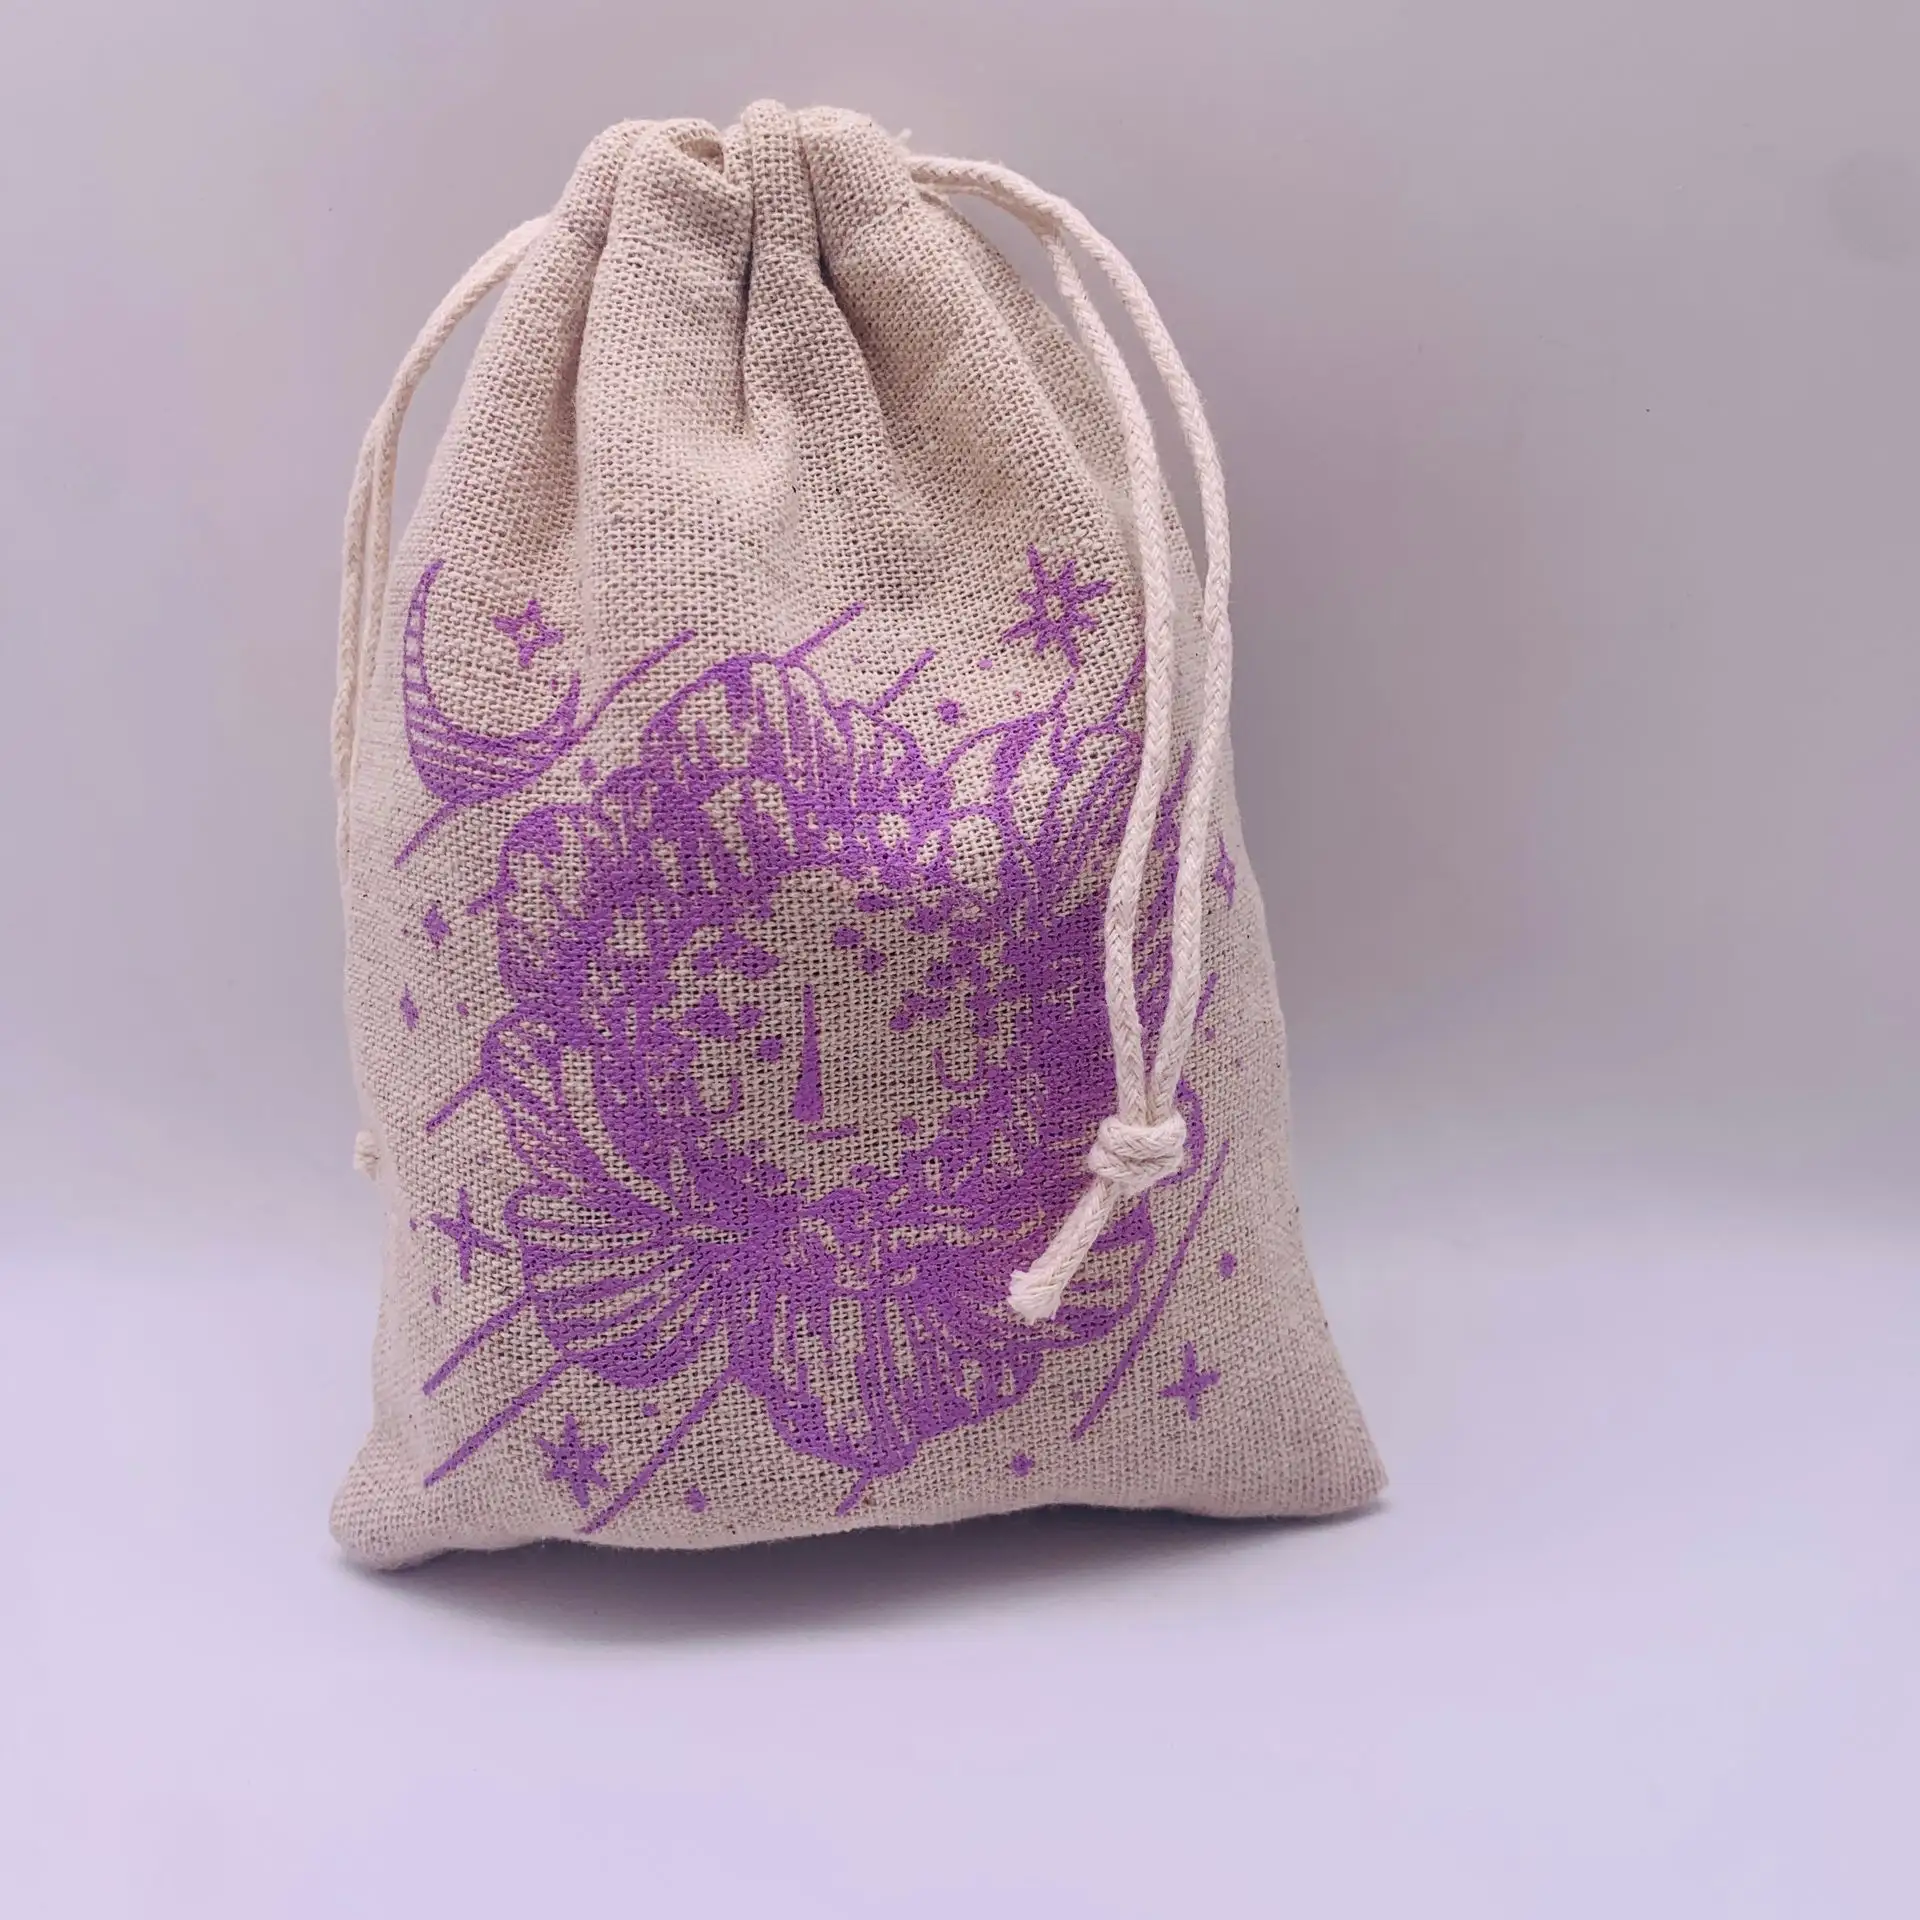 Bolsas de algodón orgánico ecológico para joyería, bolsas de muselina para regalo, de lino y algodón, venta al por mayor